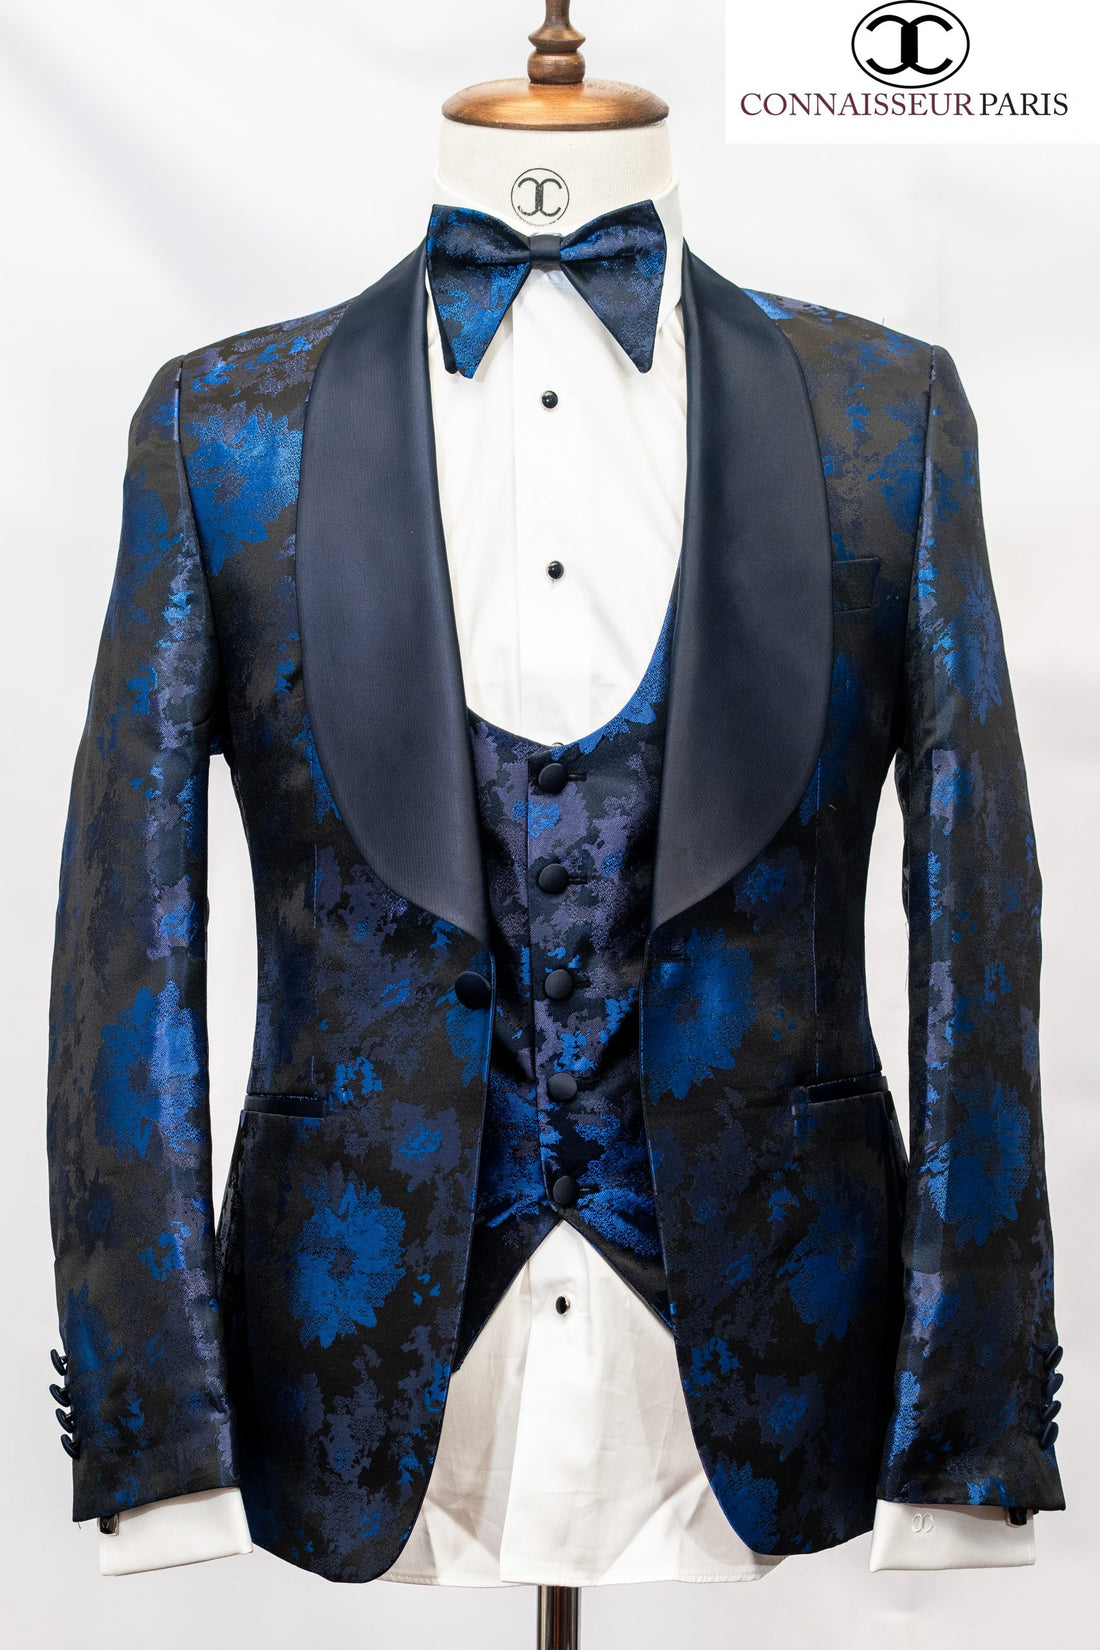 Connaisseur - Navy and Royal blue floral pattern 3-piece slim fit shawl lapel tux with U vest